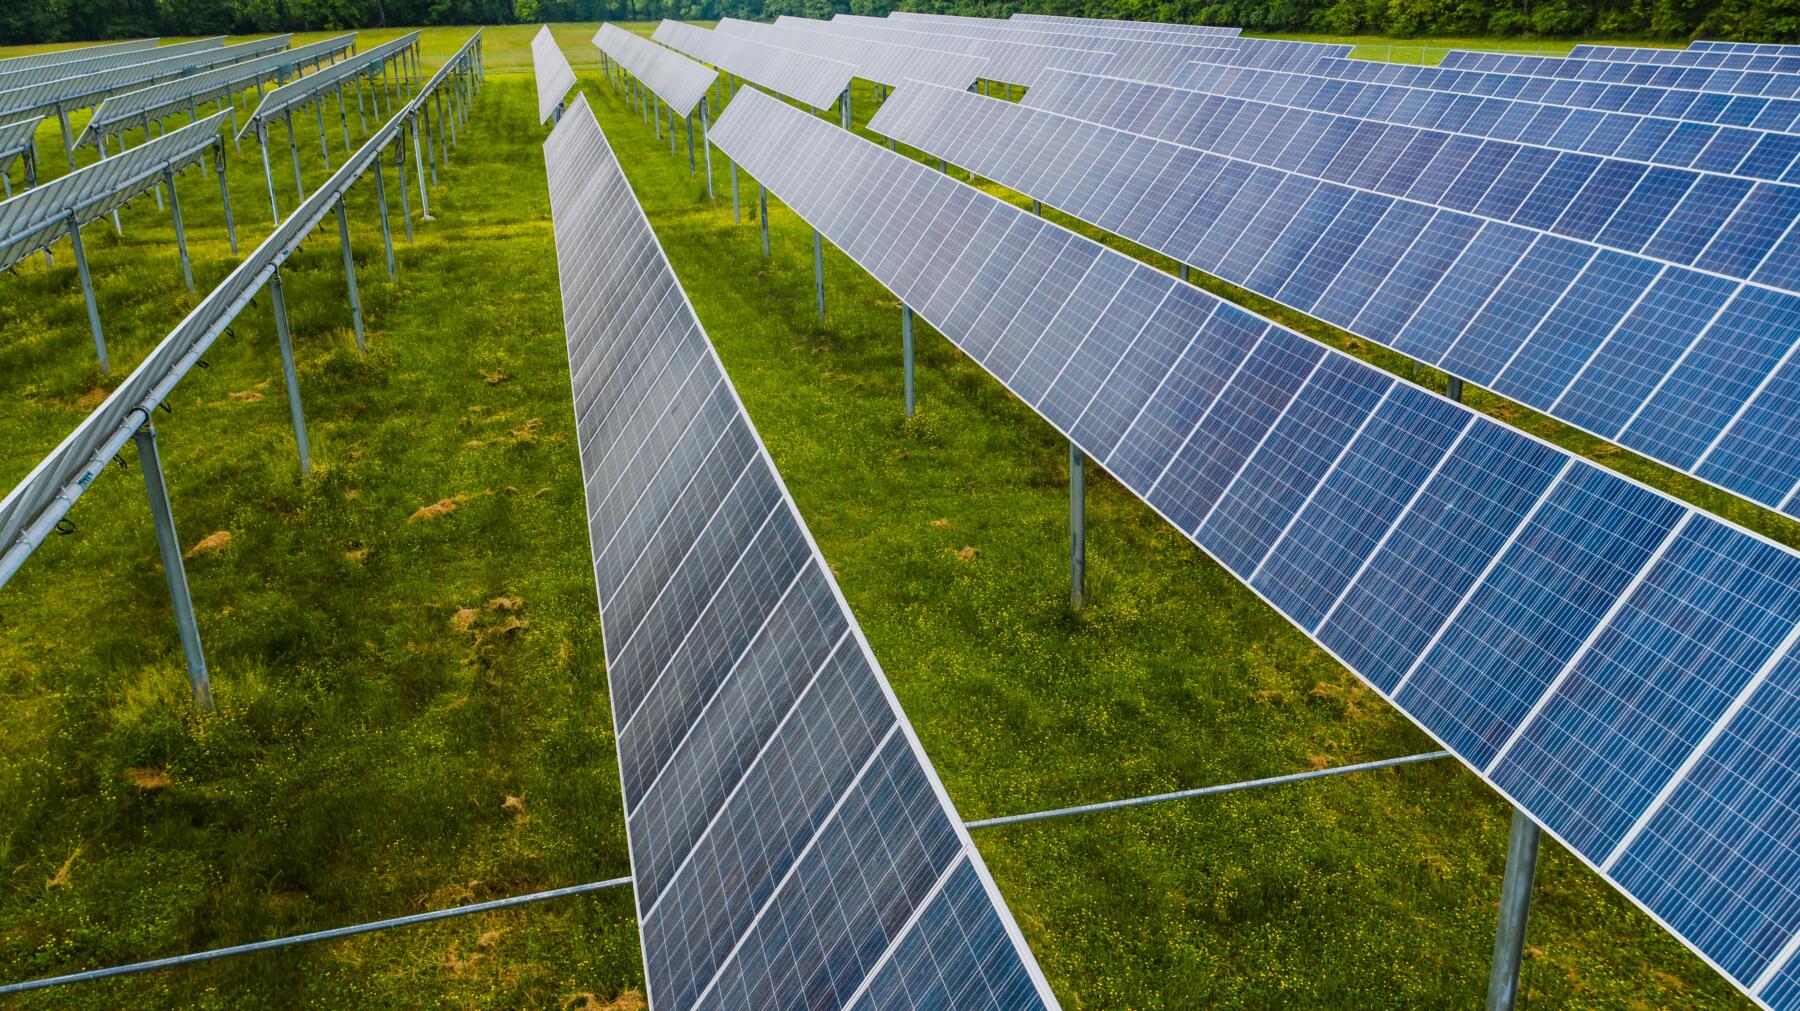 Agatos ottiene autorizzazione per impianto fotovoltaico da 87 MWp nel vercellese